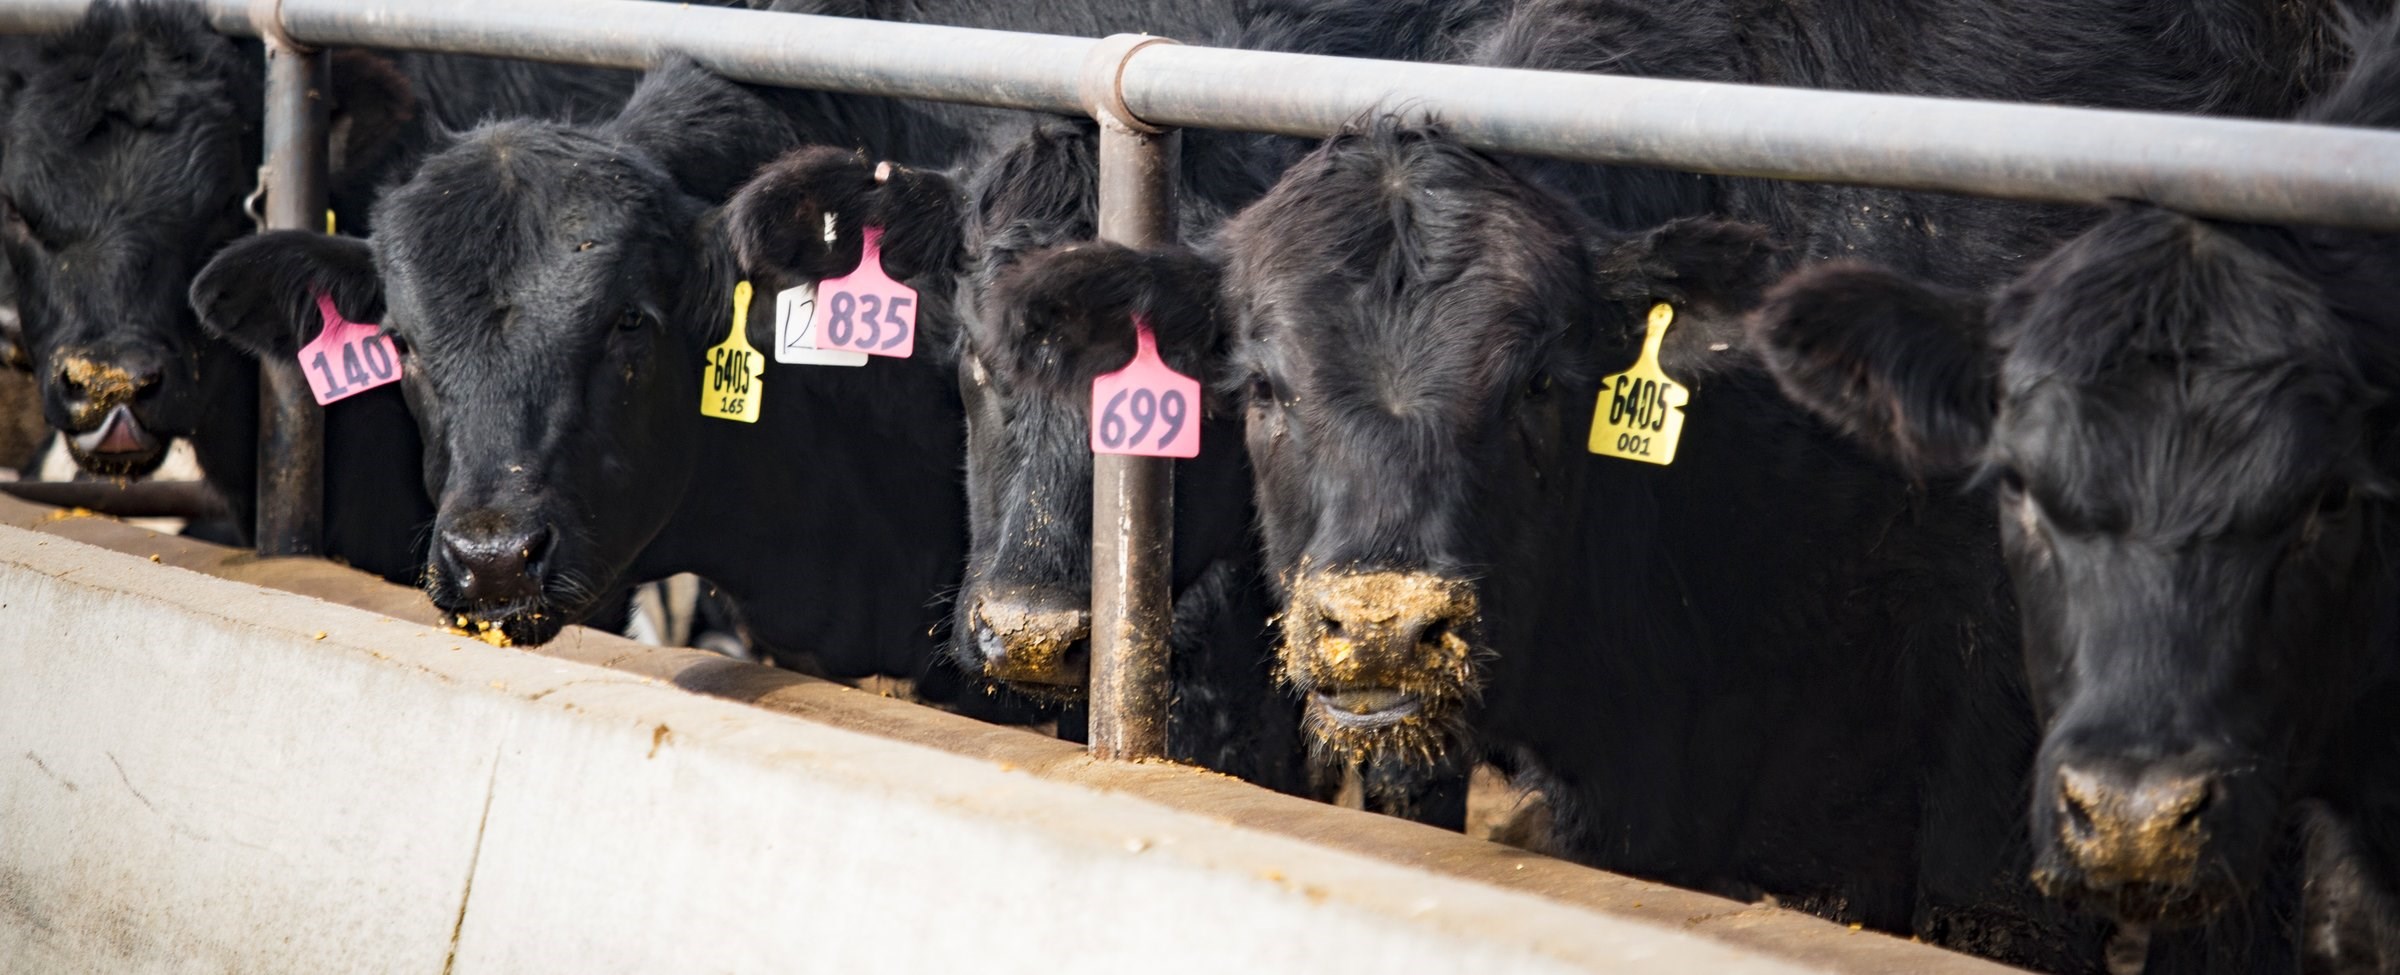 Preventing bovine respiratory disease (BRD) in finishers